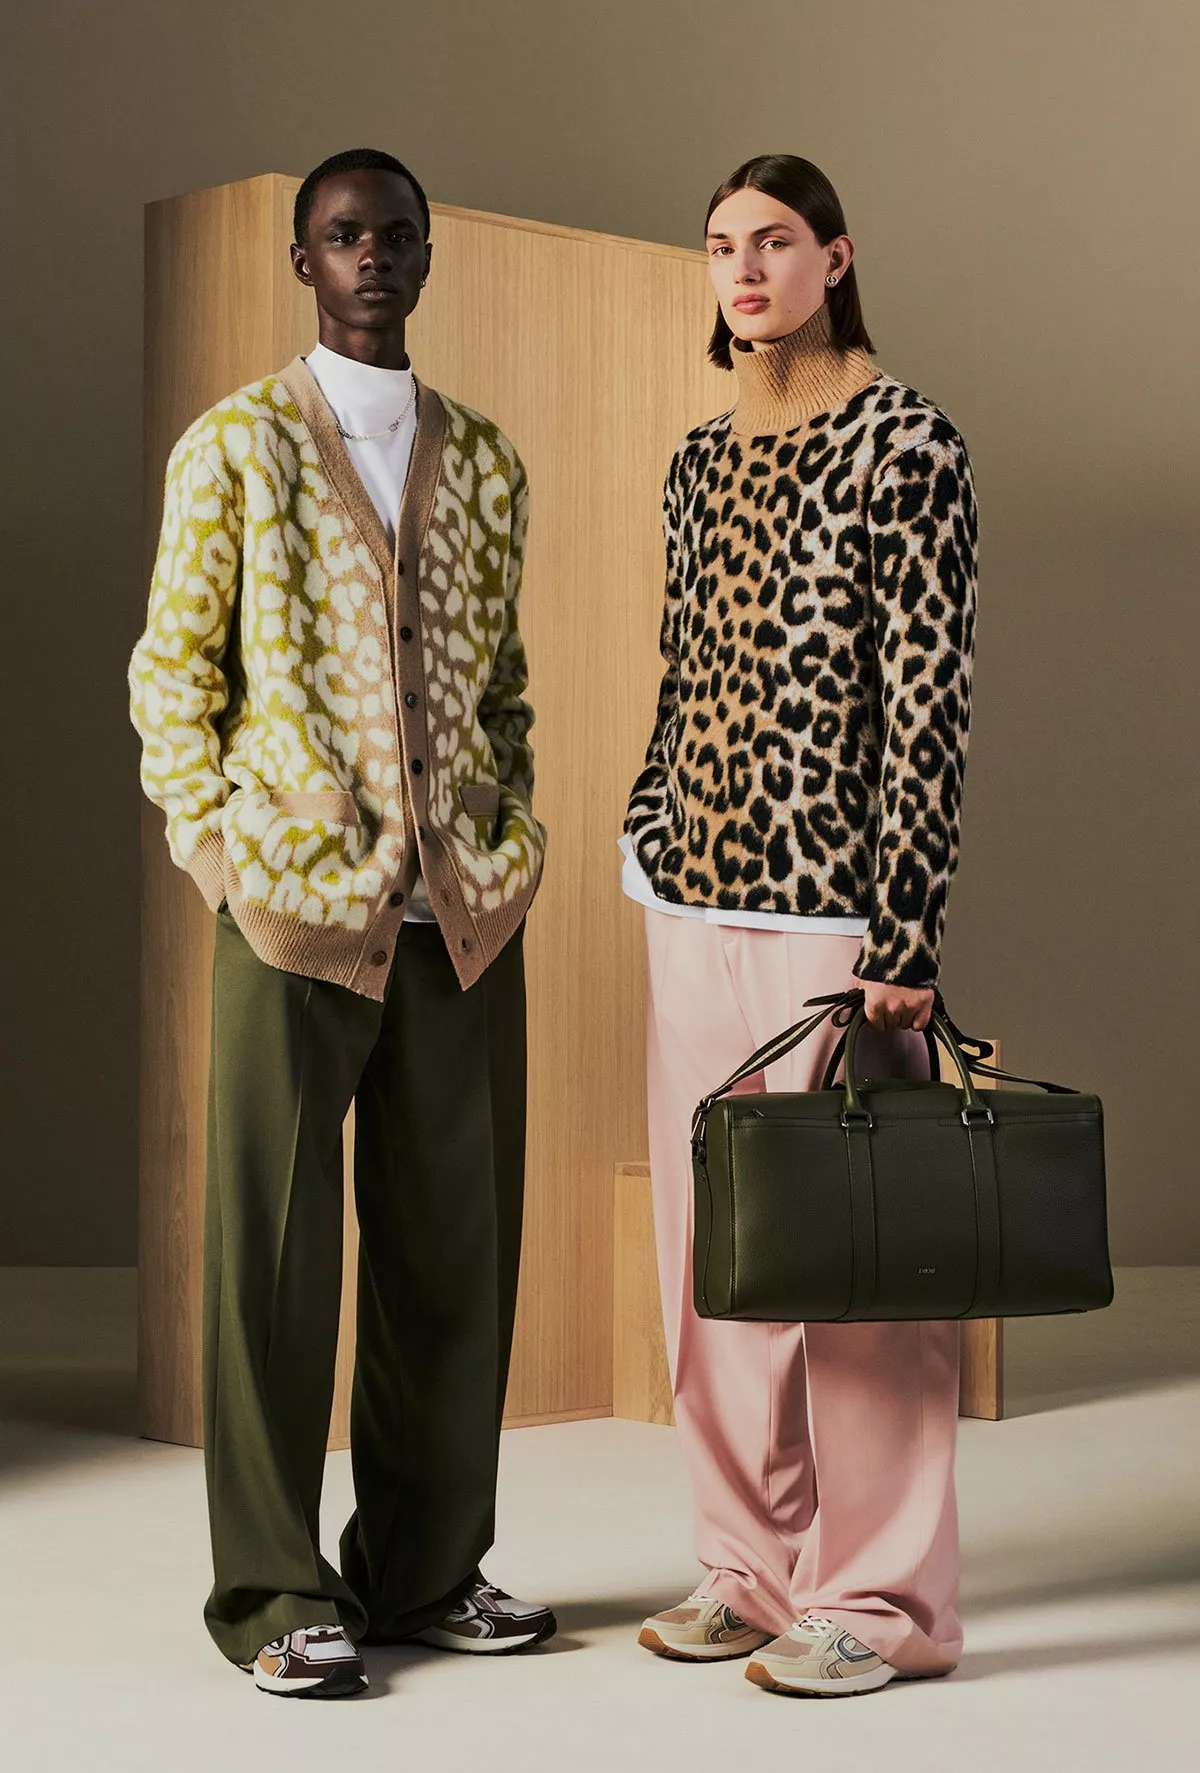 ديور تقدّم مجموعة الحقائب الجديدة ديور لانغو Dior Lingot للرجال